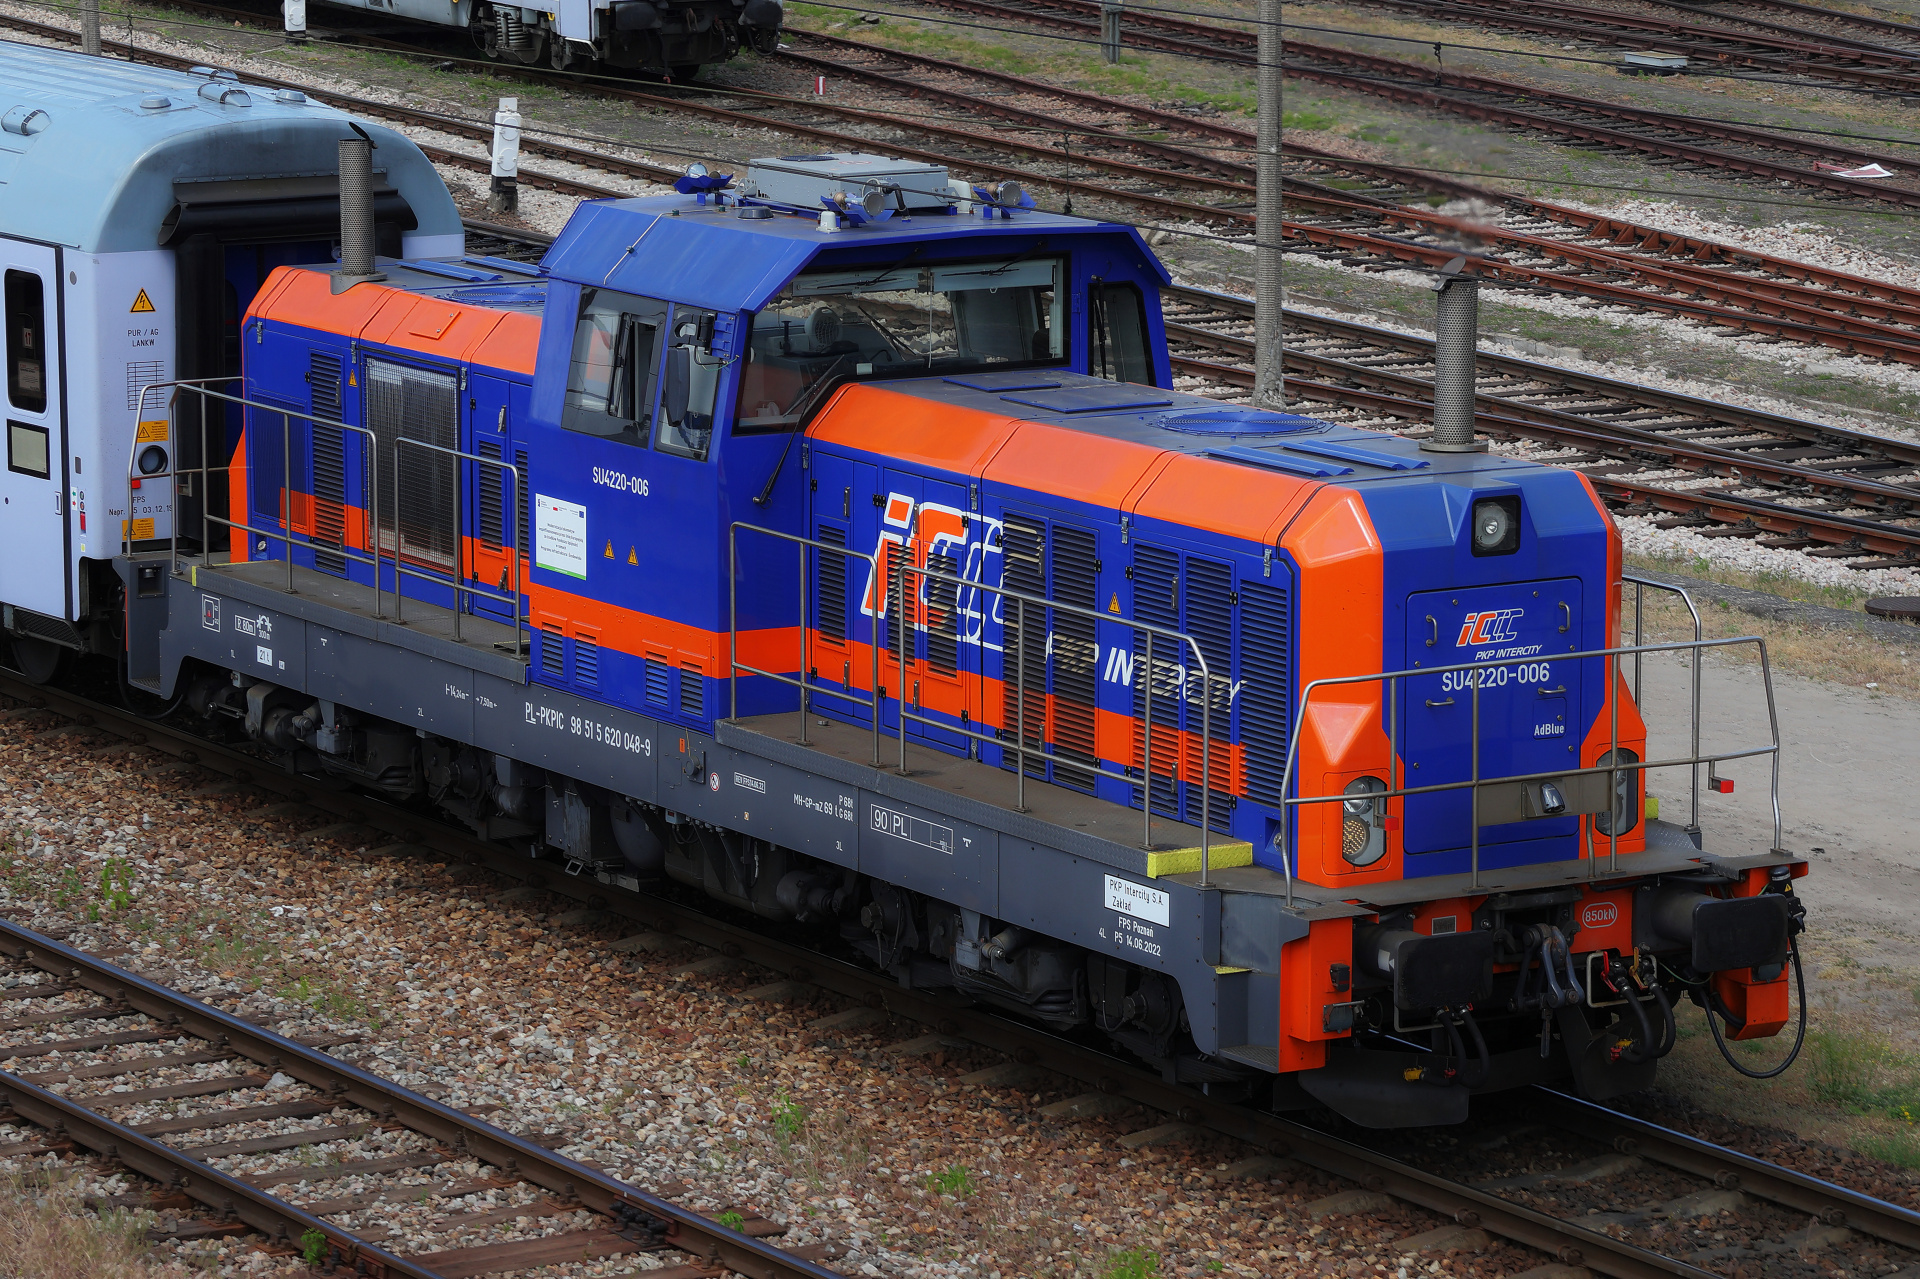 FPS Cegielski SU4220-006 (Vehicles » Trains and Locomotives)